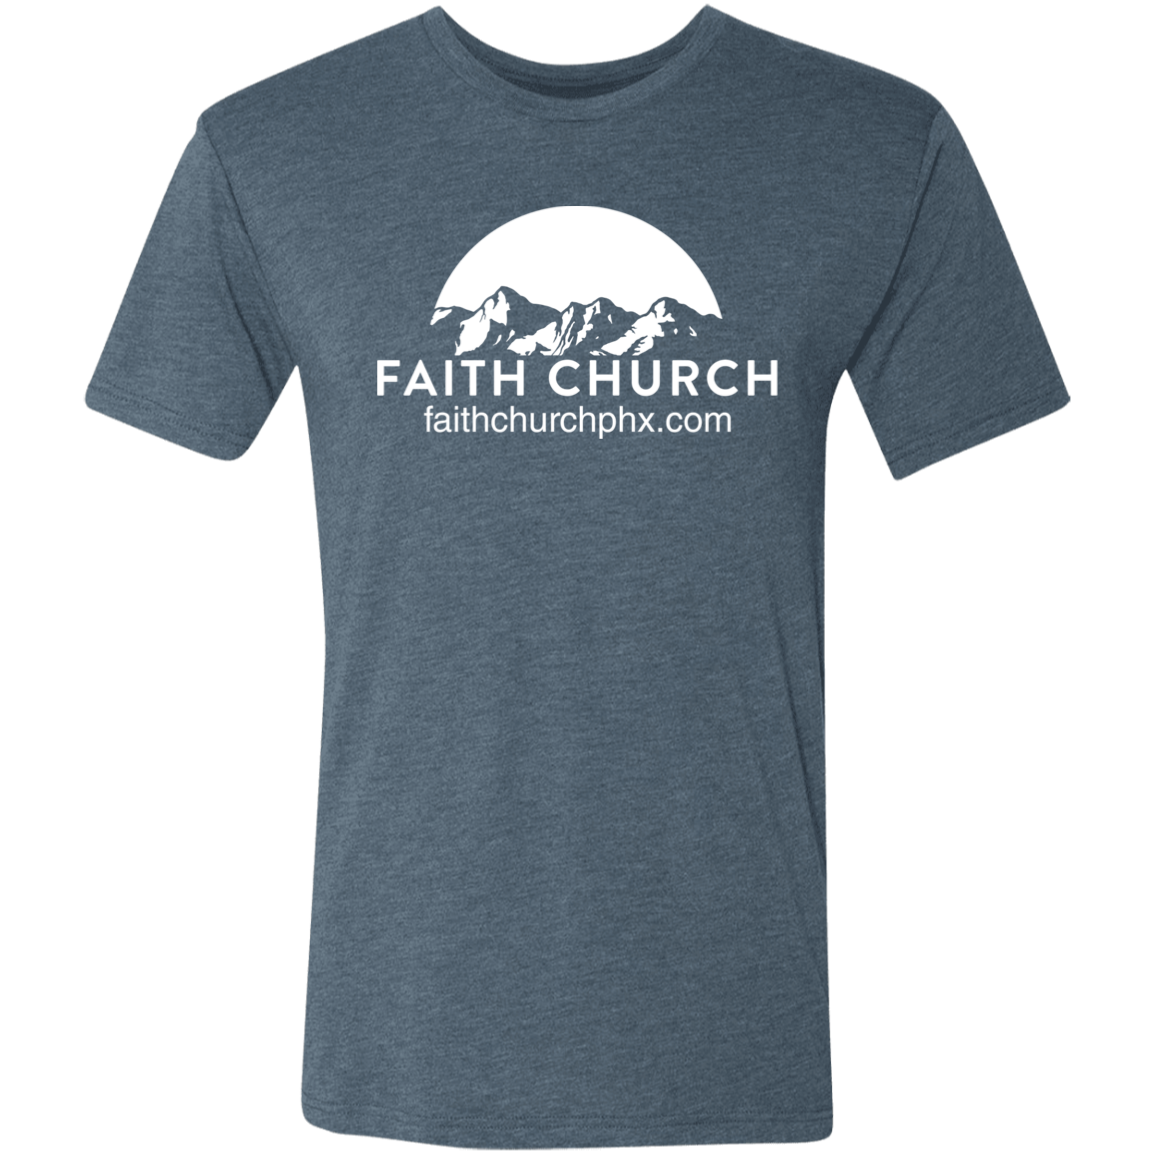 Faith Church - Triblend T-Shirt